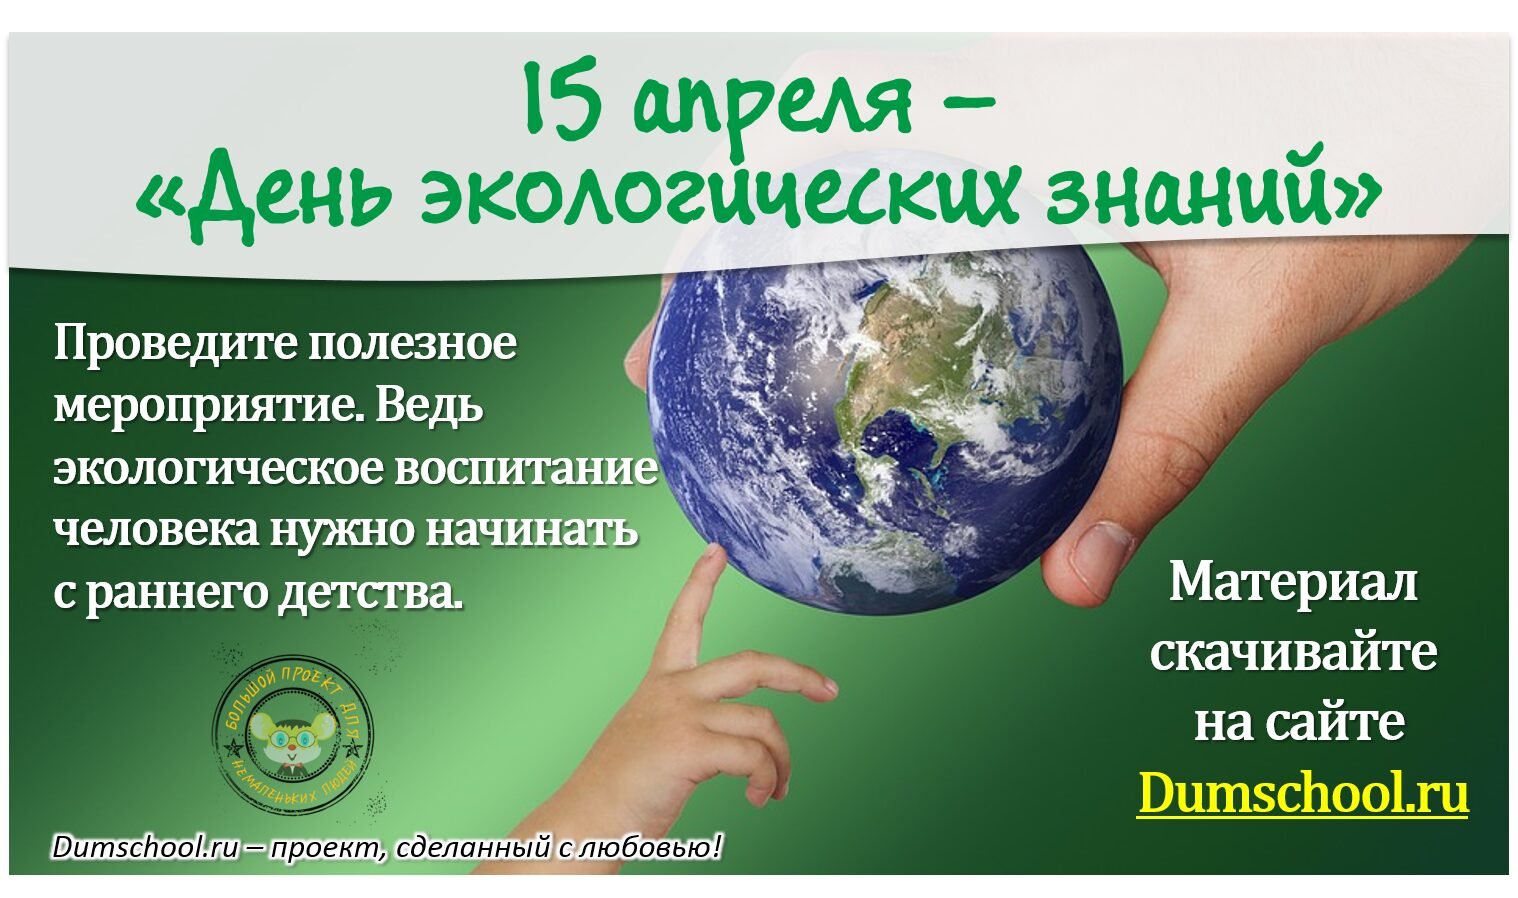 15 Апреля день экологических знаний. Всемирный день экологических знаний. День экологической грамотности. Открытка день экологических знаний. 15 апреля день экологических знаний для детей